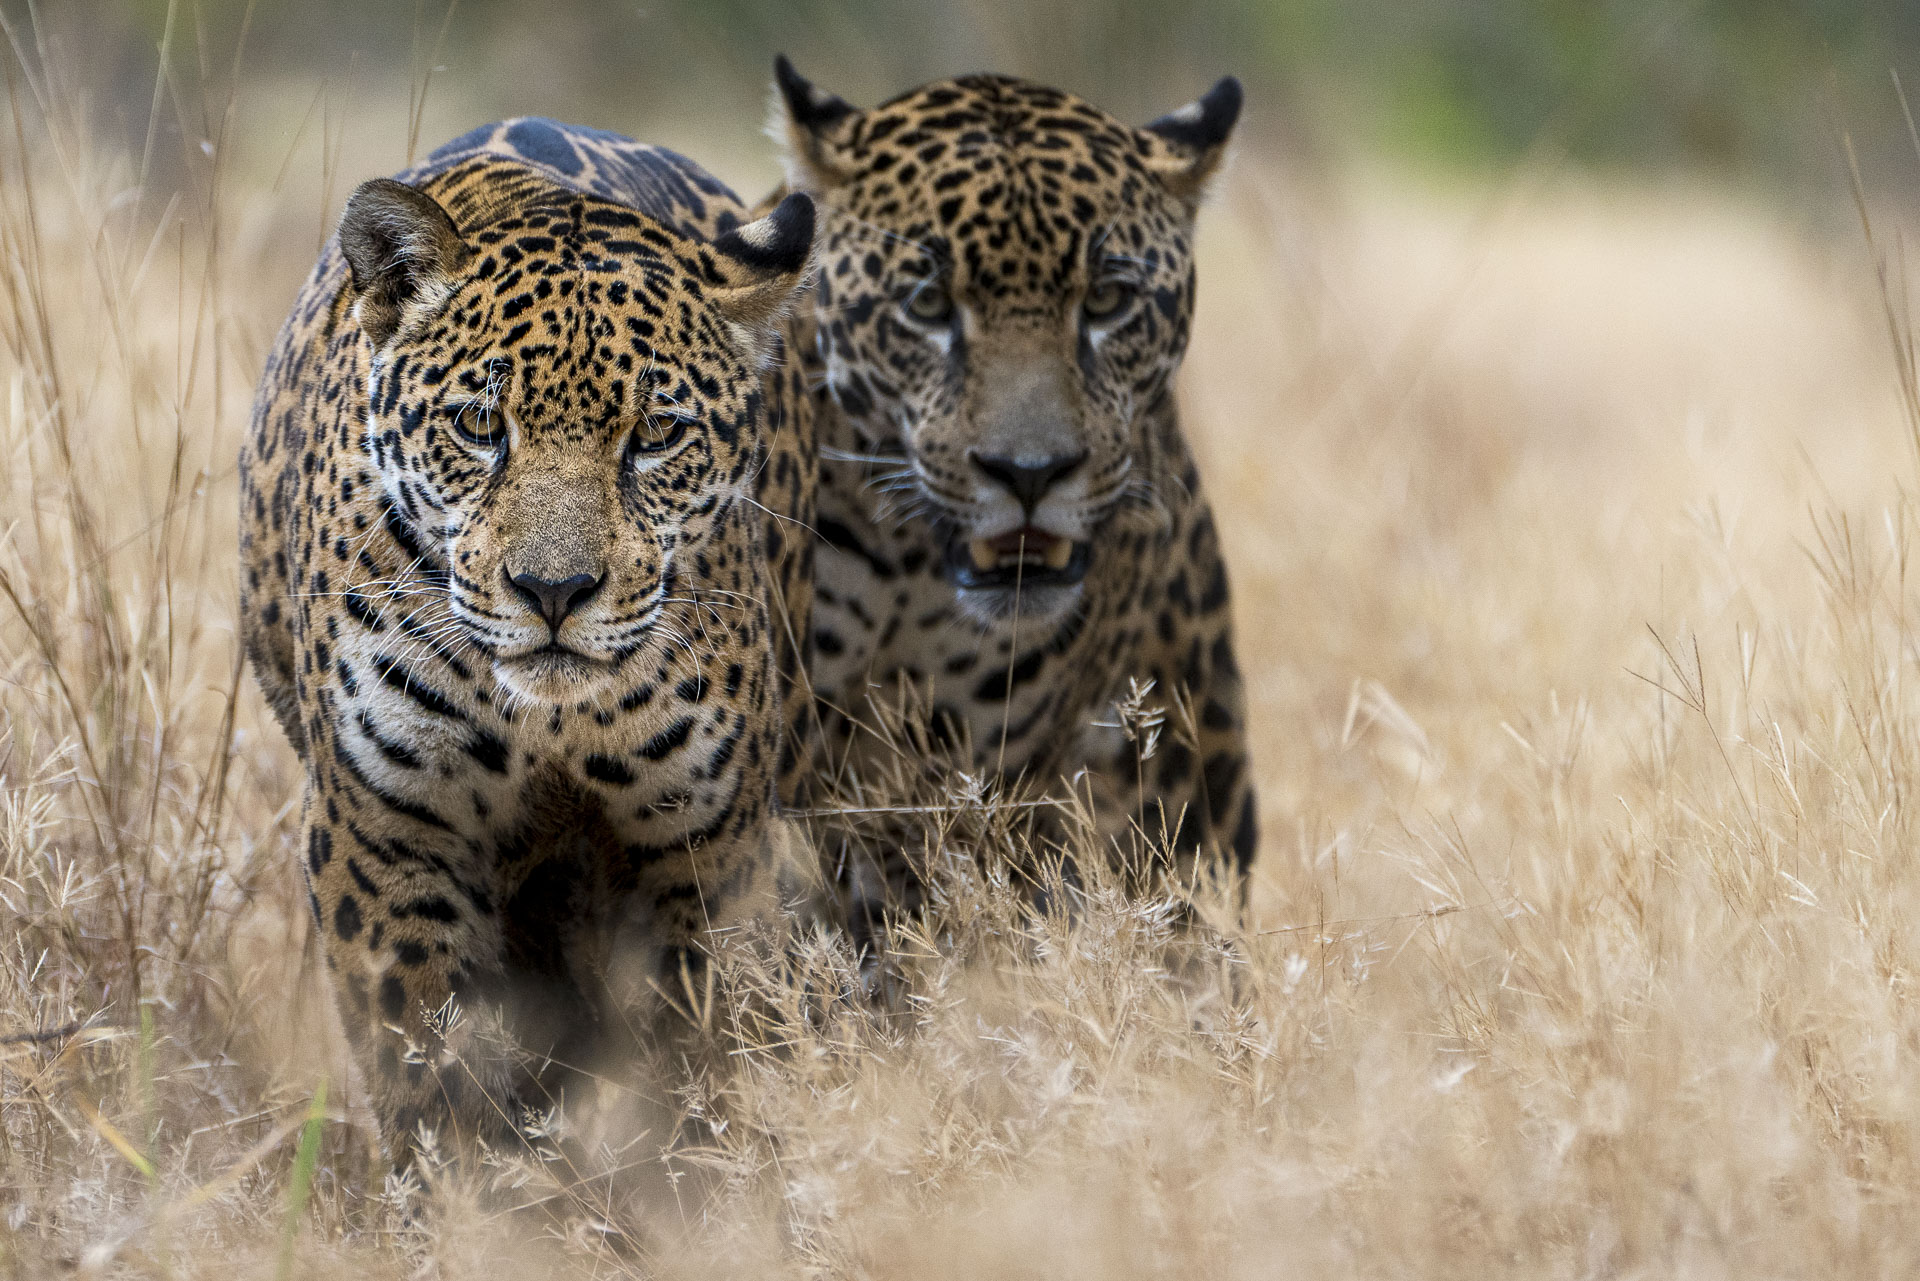 Jaguare fotografiert auf einer Fotoreise mit Benny Rebel durch Brasiliens Pantanal. Amzonas.